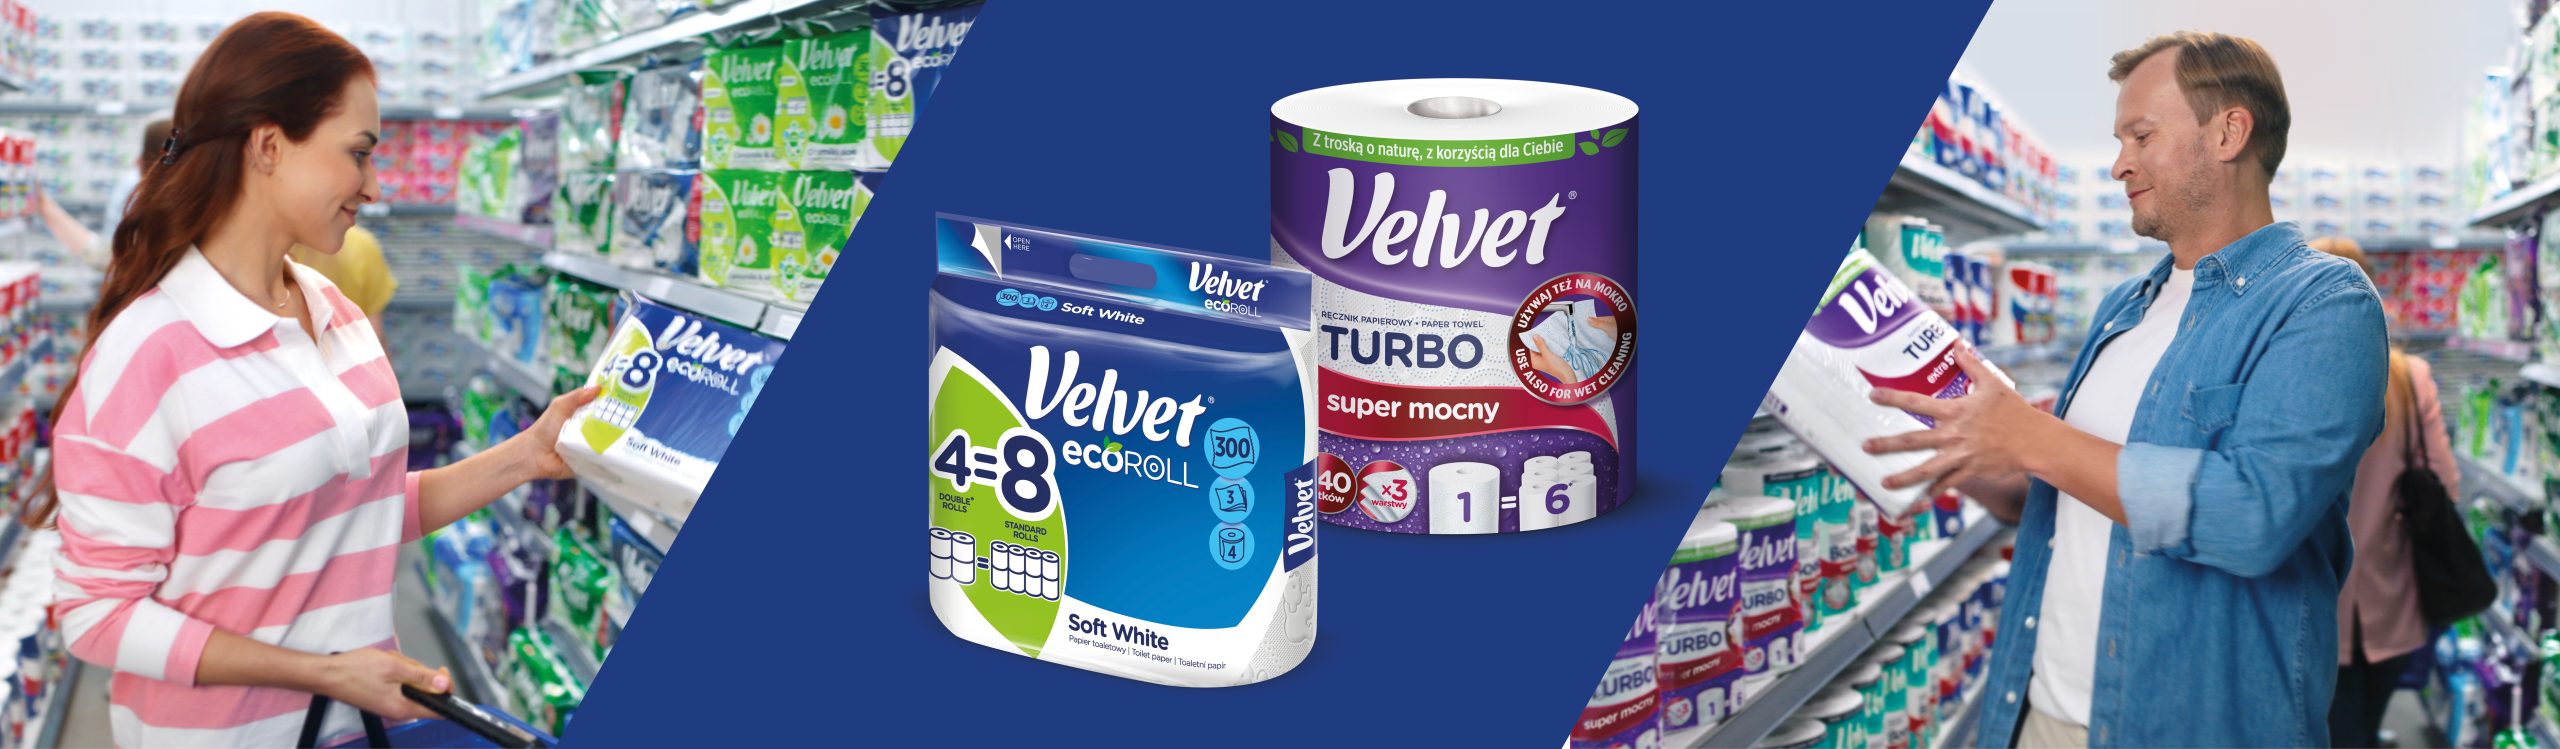 W dzisiejszych czasach jakość ma szczególne znaczenie – nowa kampania produktów Velvet